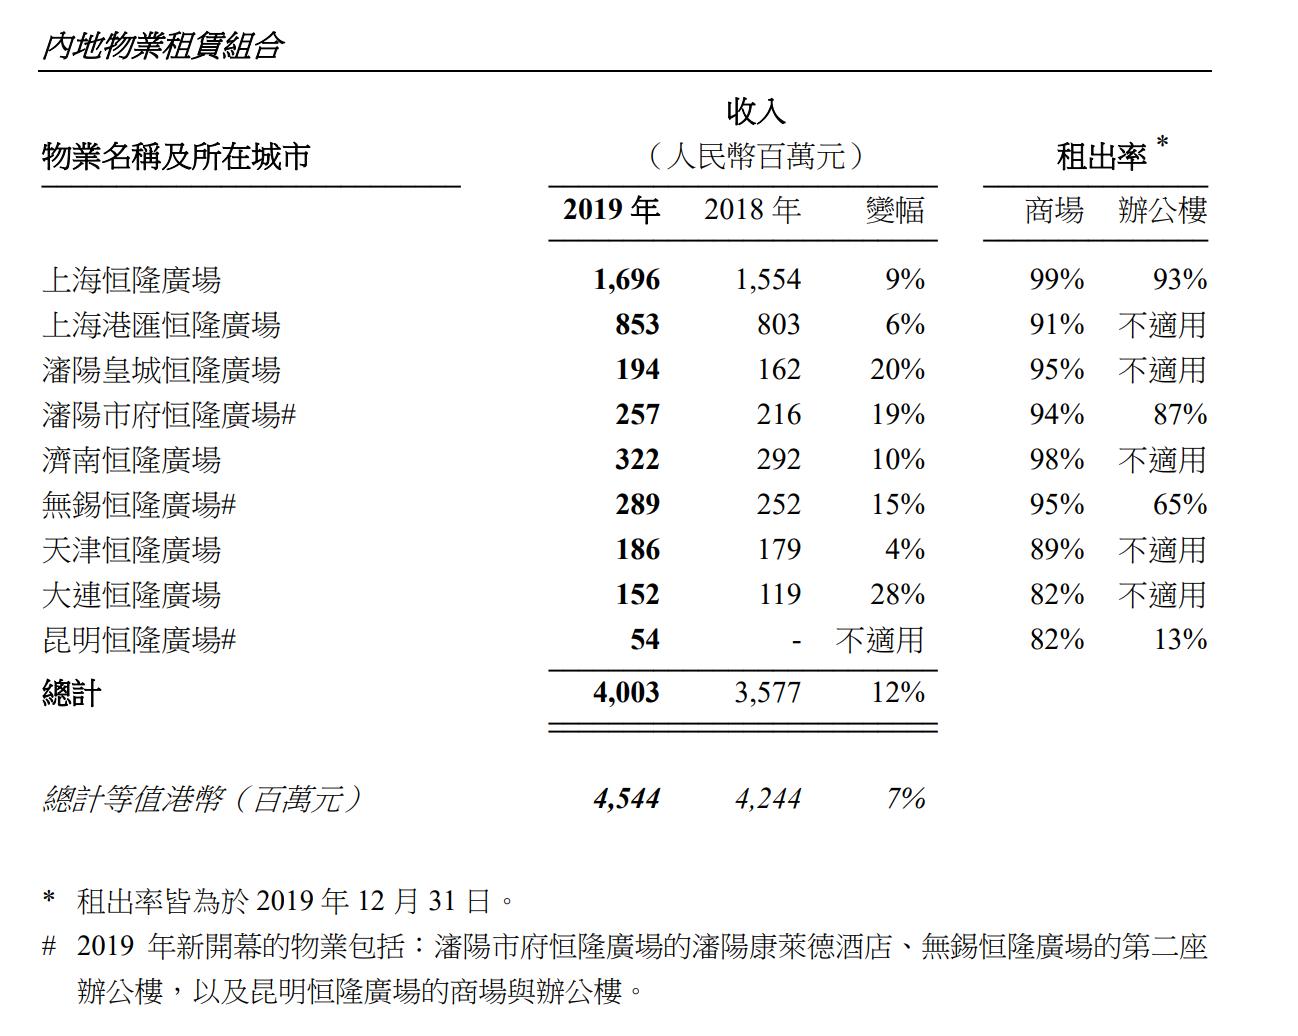 恒隆地产发布2019全年业绩 上海零售物业收入增长11%